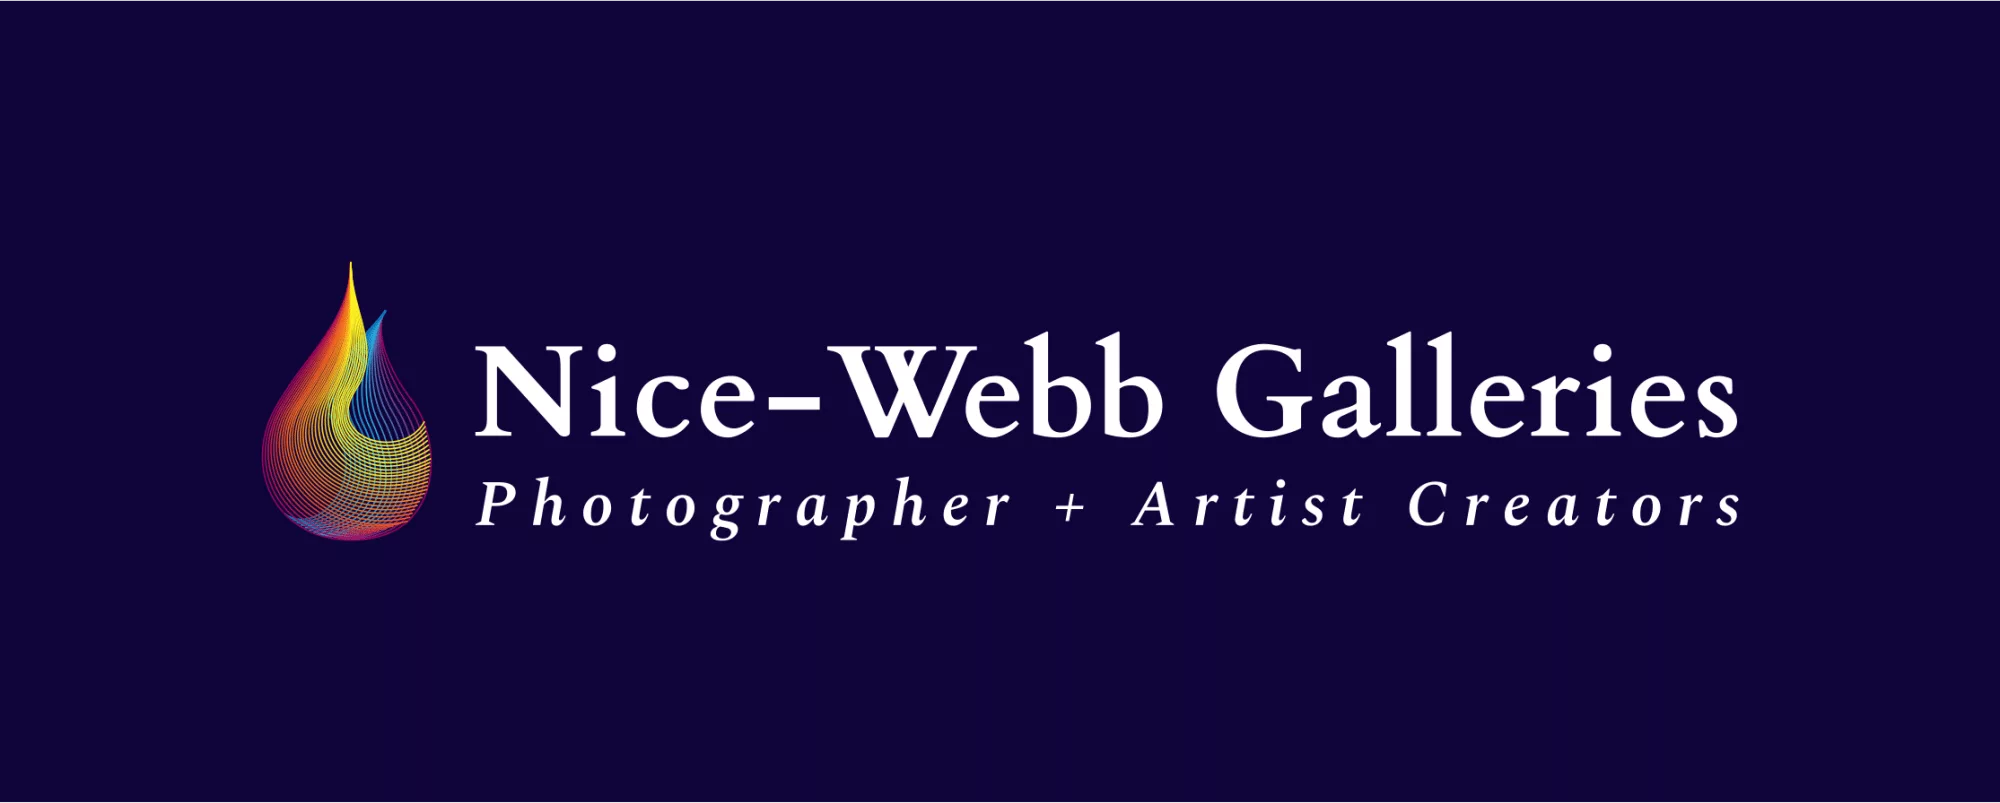 Nice-Webb Galleries